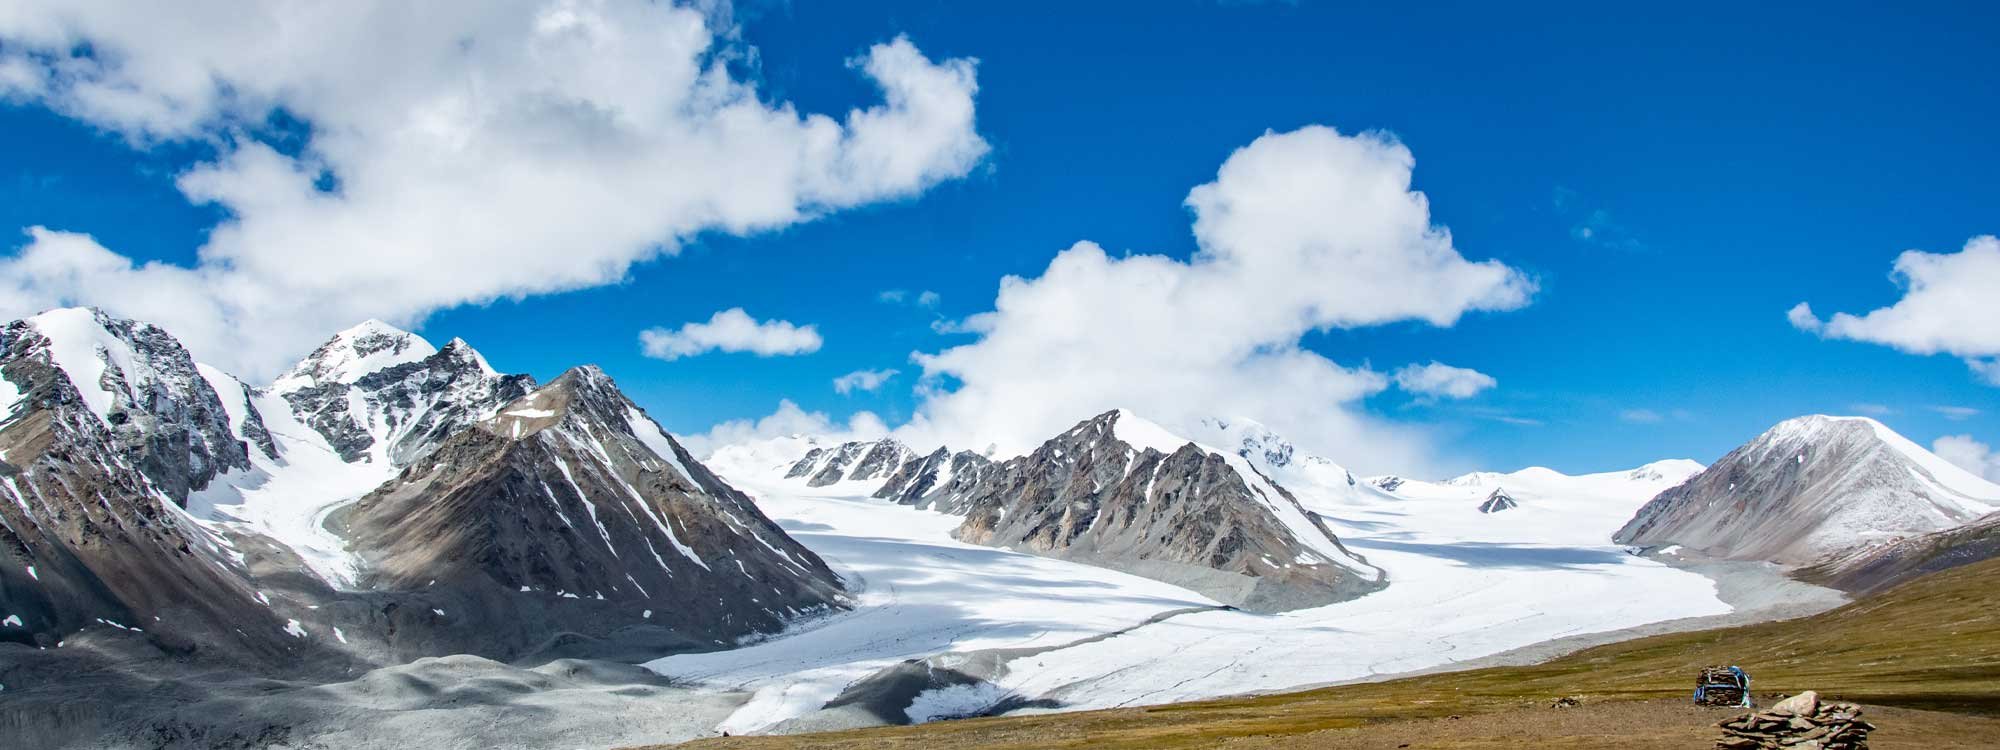 Алтай Таван богд уулын Ерөнхийлөгчийн овооноос цааших хөдөлгөөнийг түр хязгаарлана